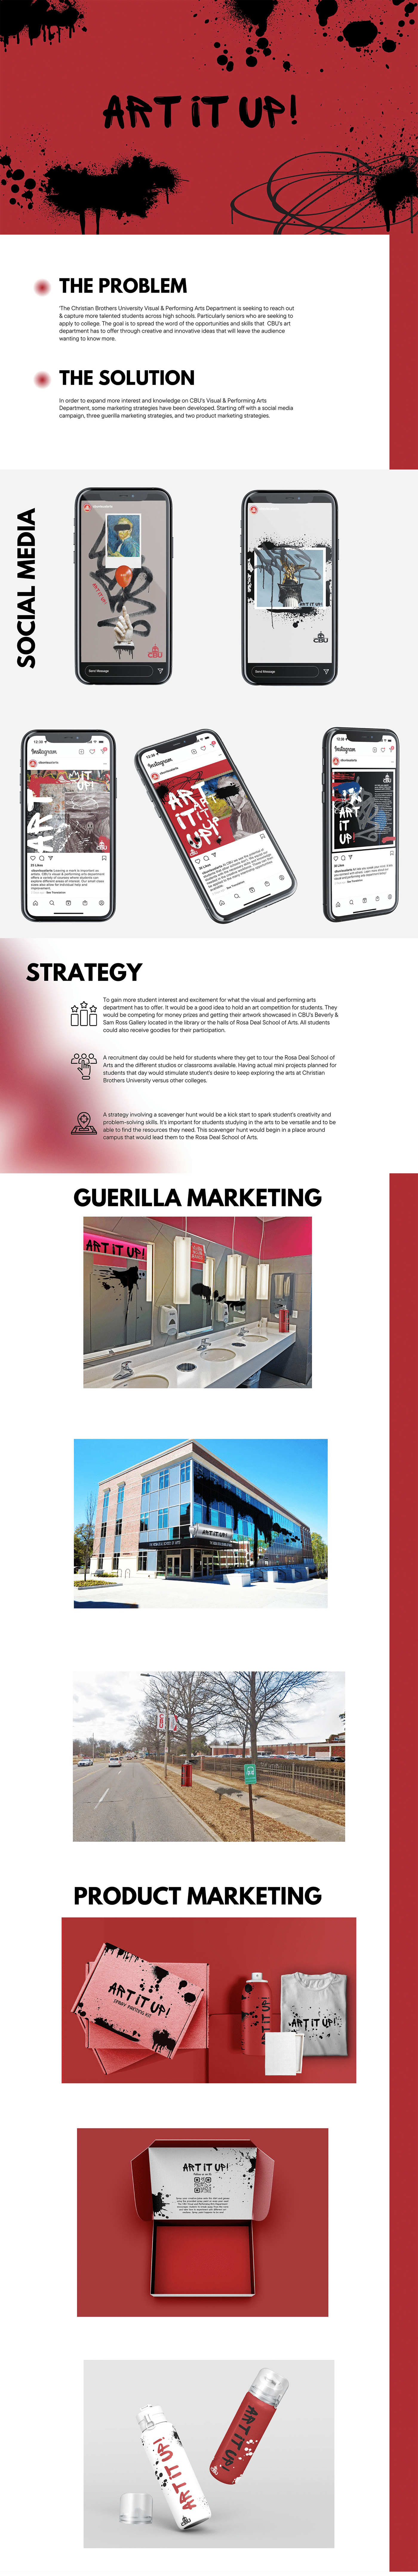 campaign Graffiti graphic design  Guerilla marketing   product design  red social media University